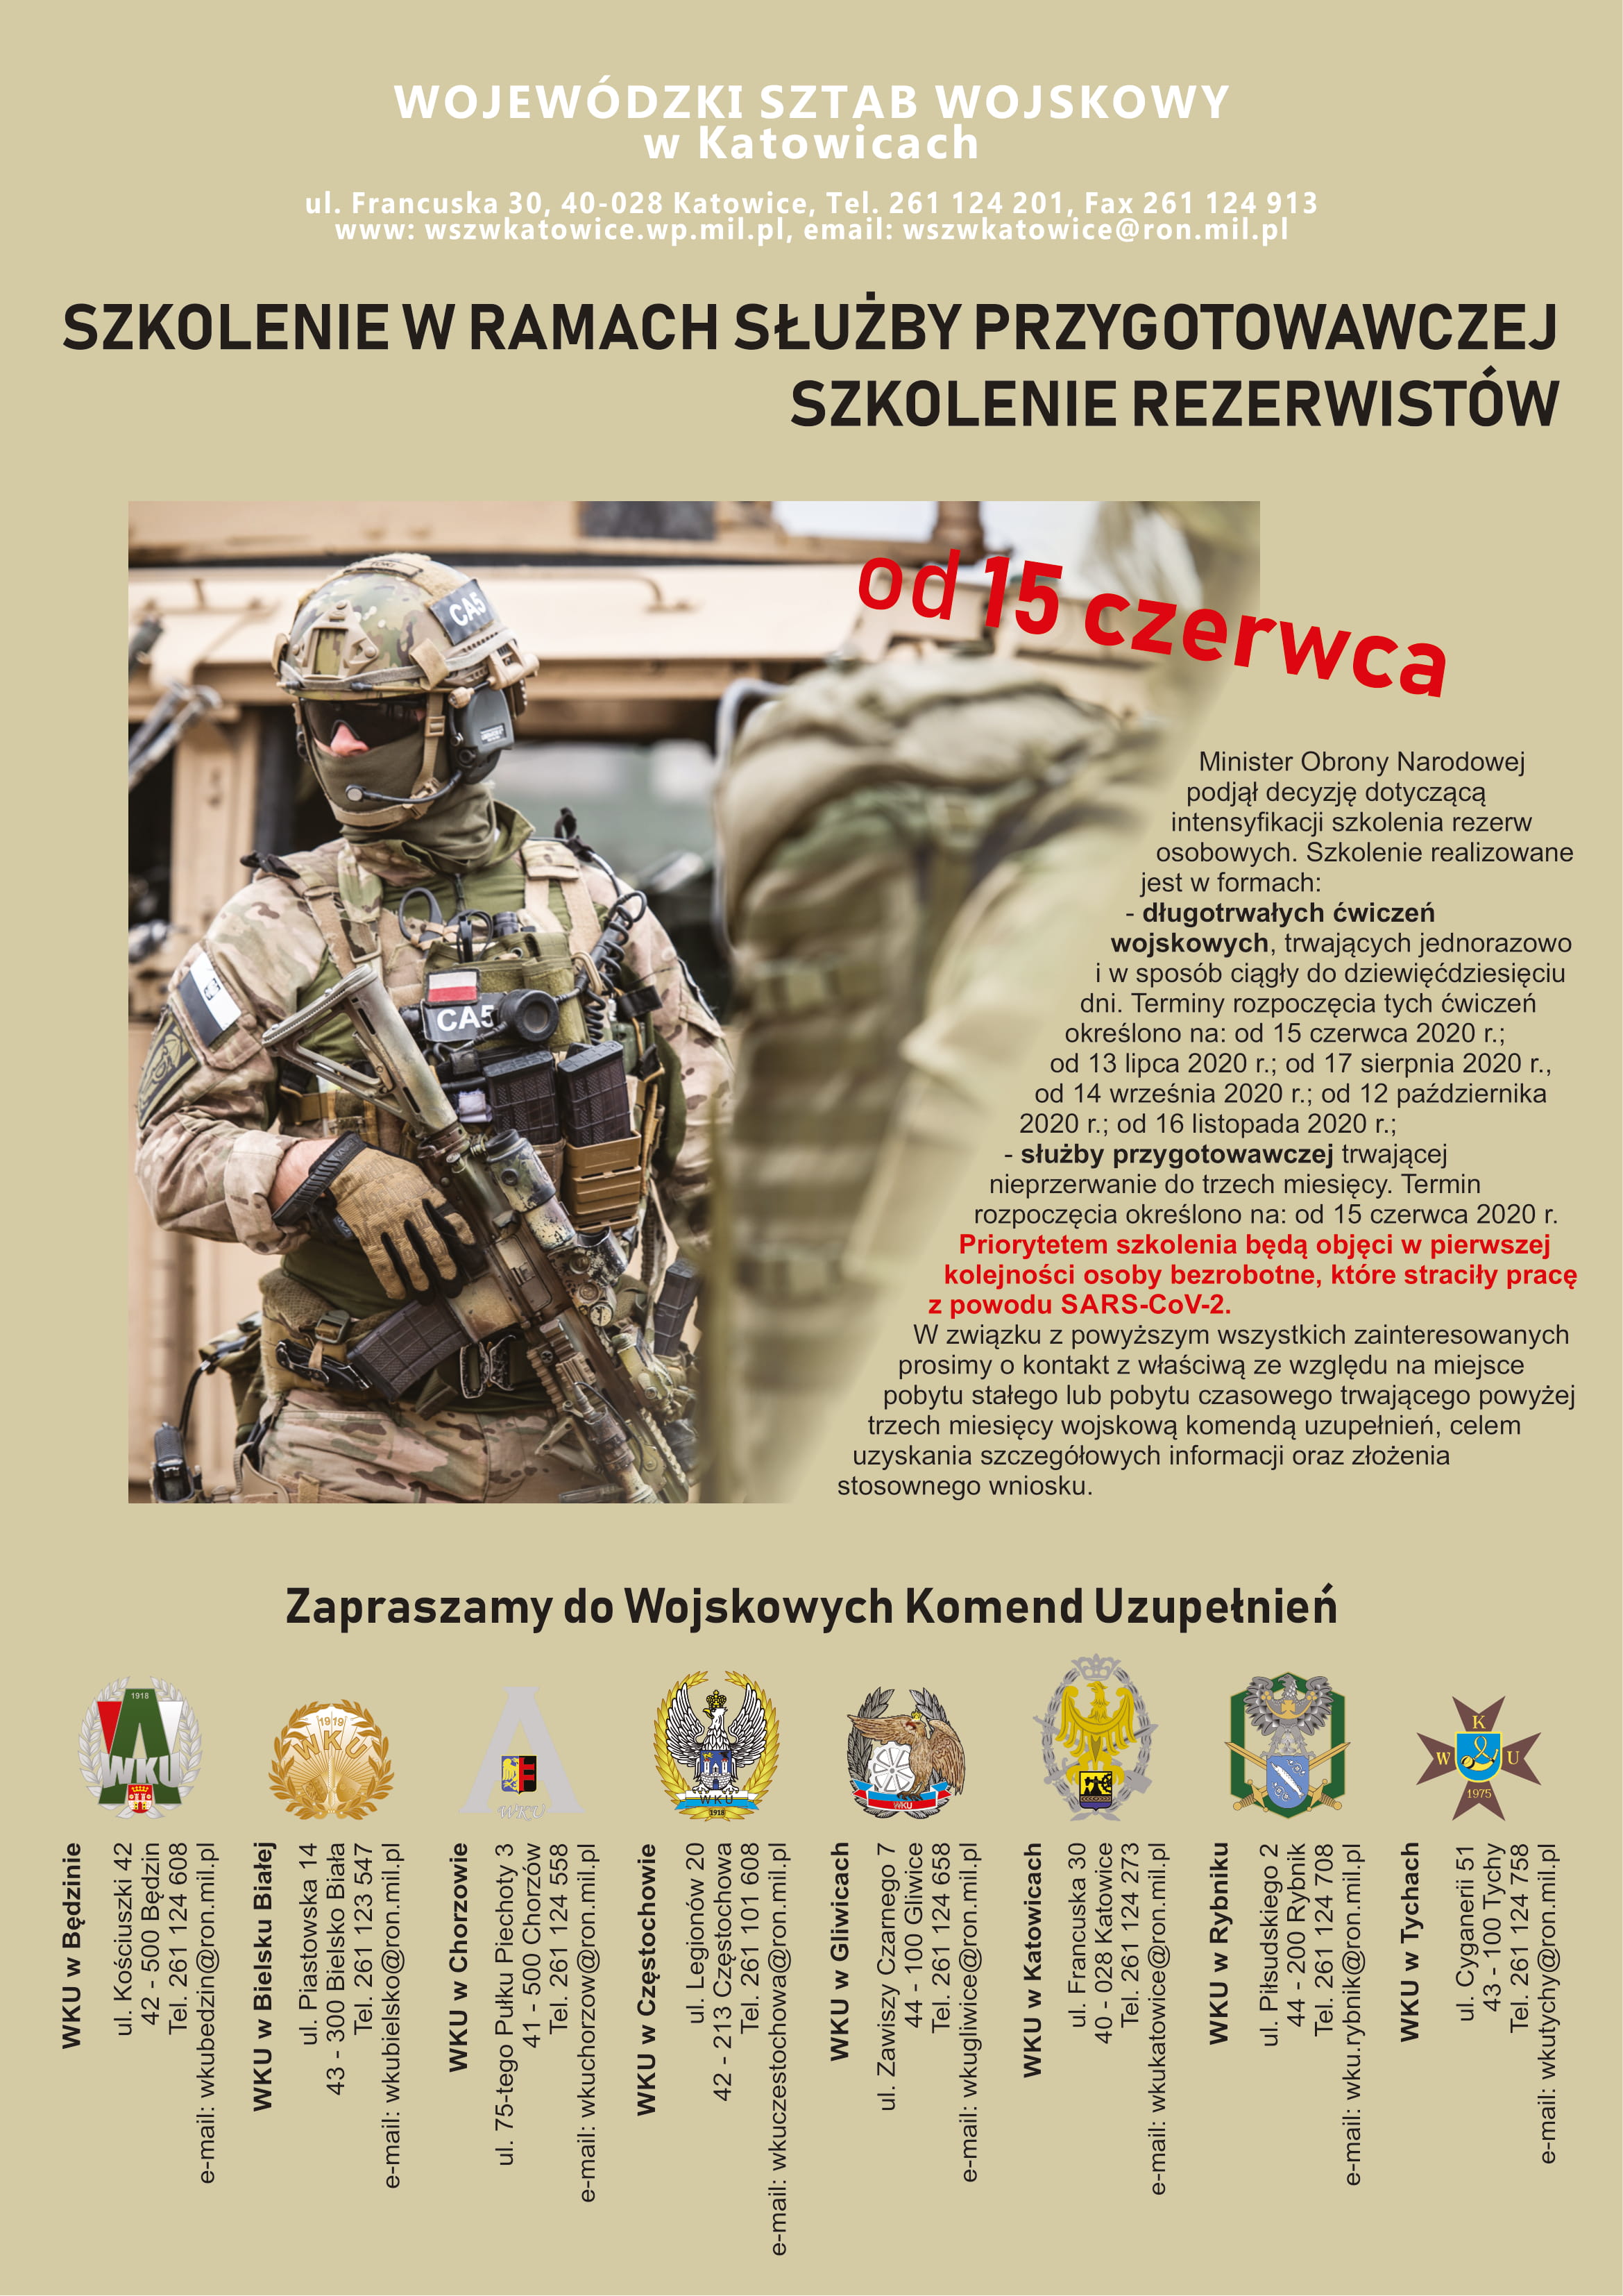 Plakat Wojewódzkiego Sztabu Wojskowego w Katowicach promujący szkolenie w formach: długotrwałych ćwiczeń wojskowych, służby przygotowawczej. Więcej informacji można uzyskać pod numerem telefonu 261 124 201, na stronie internetowej wszwkatowice.wp.mil.pl/pl/ , pod adresem e-mail wszwkatowice@ron.mil.pl